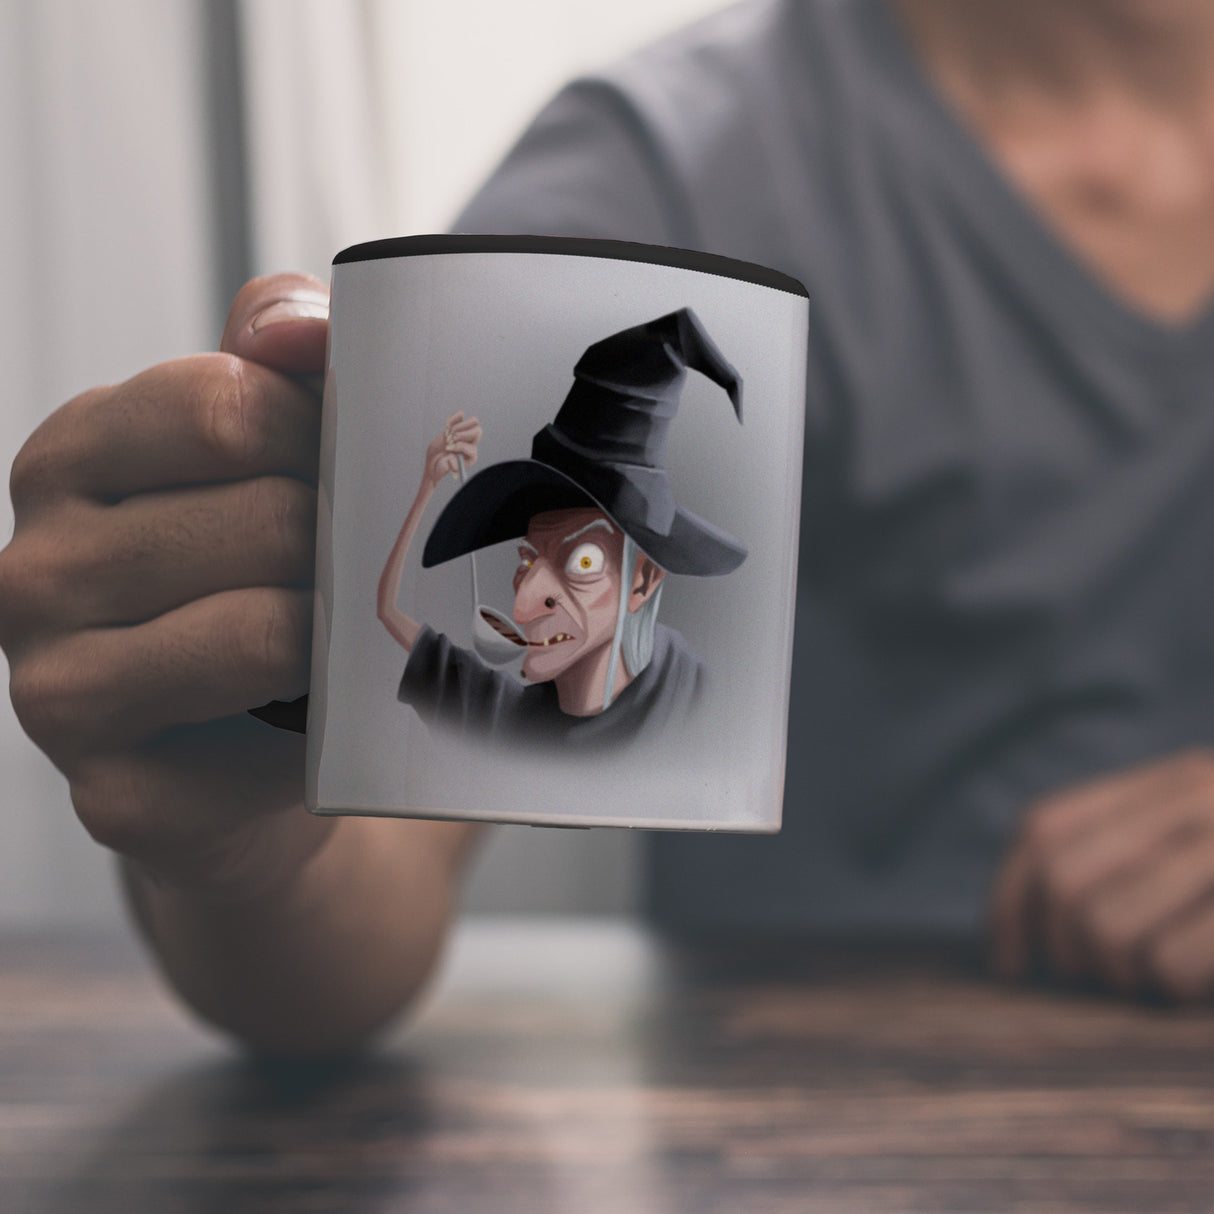 Kaffeebecher mit lustigem Motiv und Spruch - Auch Hexen brauchen Kaffee -